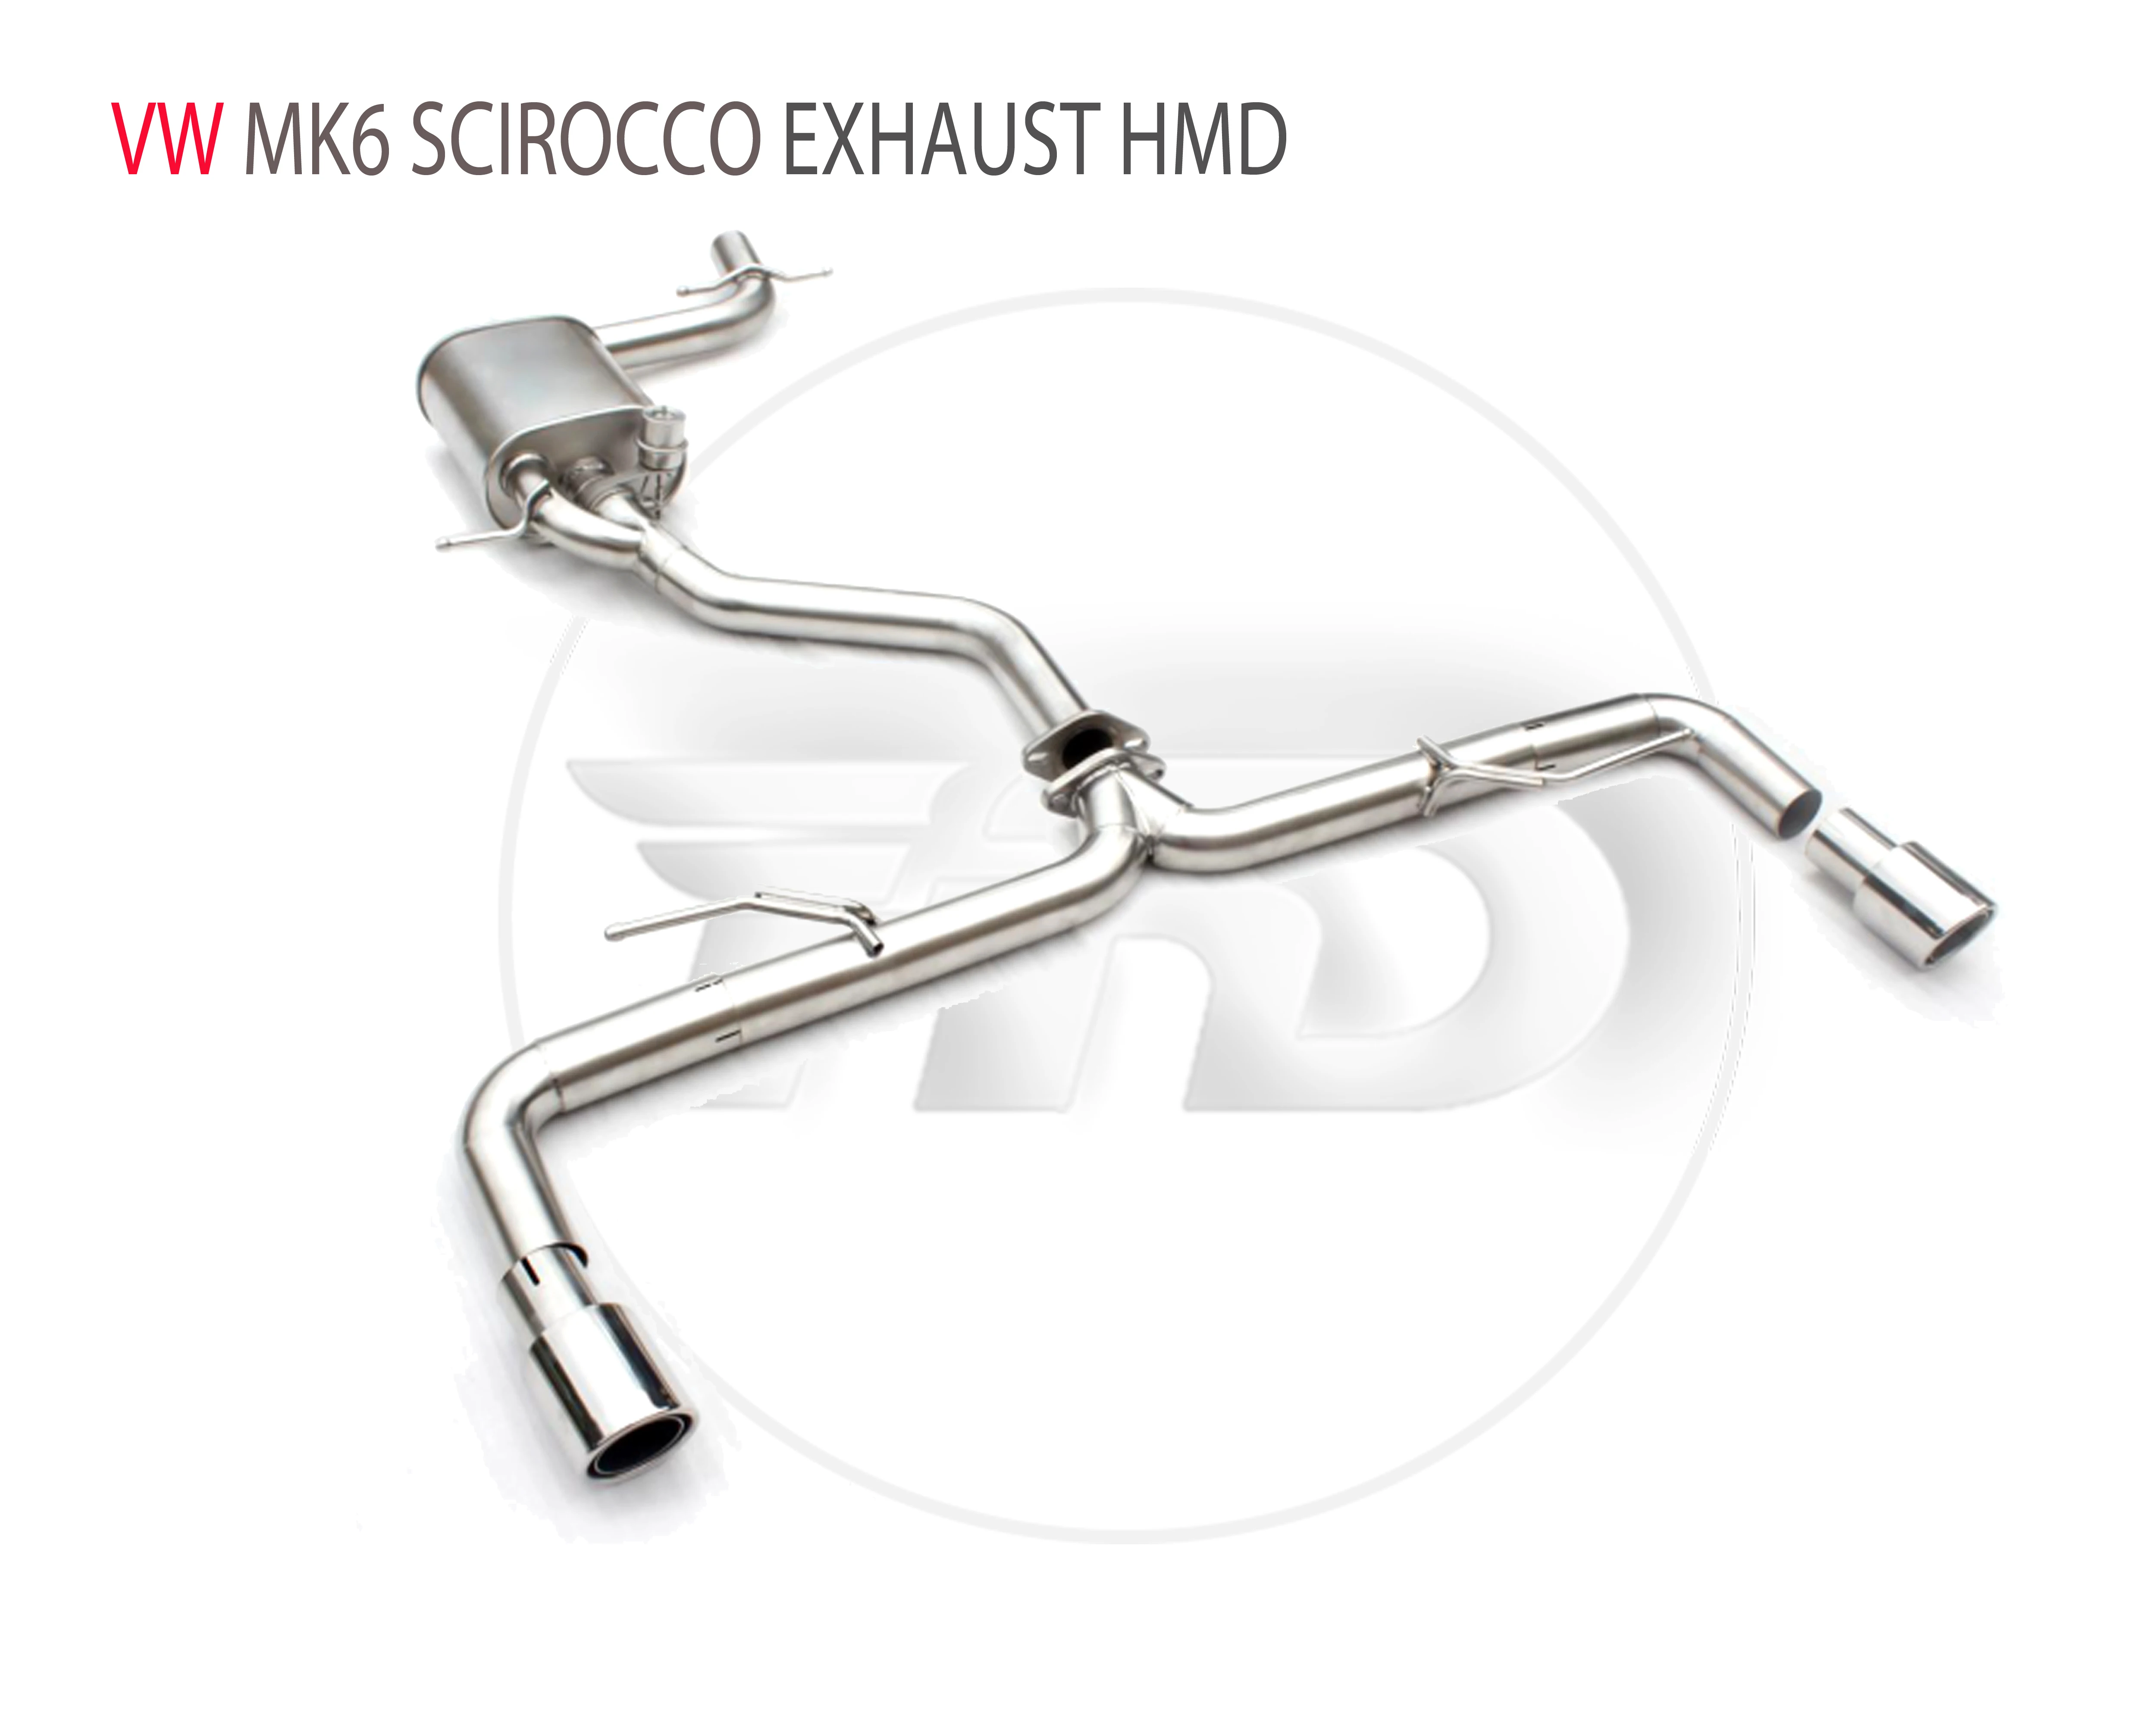 

Выхлопная труба из нержавеющей стали HMD, выпускная труба коллектора подходит для VW Golf 6 MK6 Scirocco, клапан для модификации автомобиля